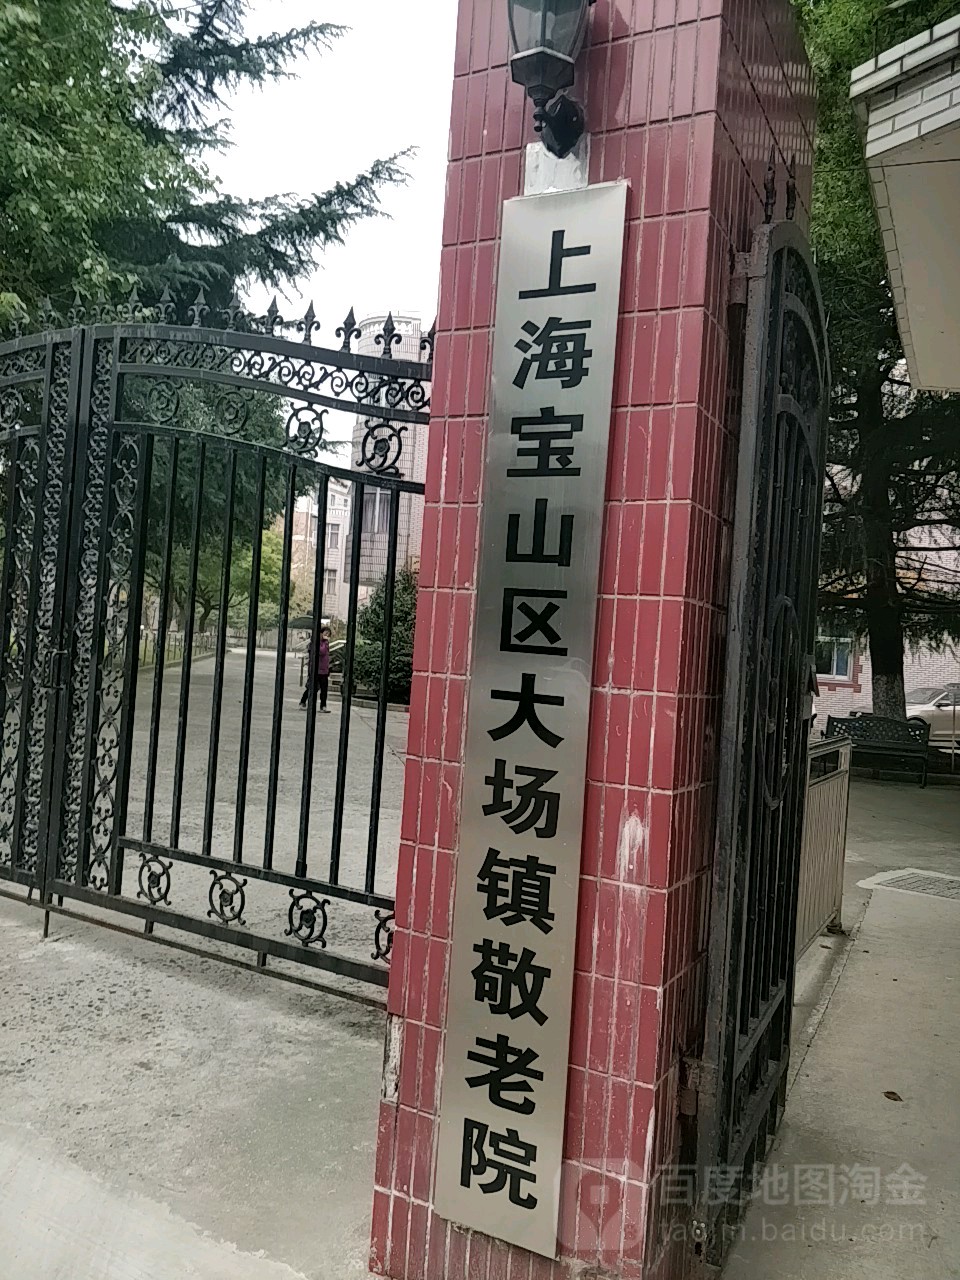 (021)56685439别名:大场小学周边综合医院大场医院地址:上海市宝山区